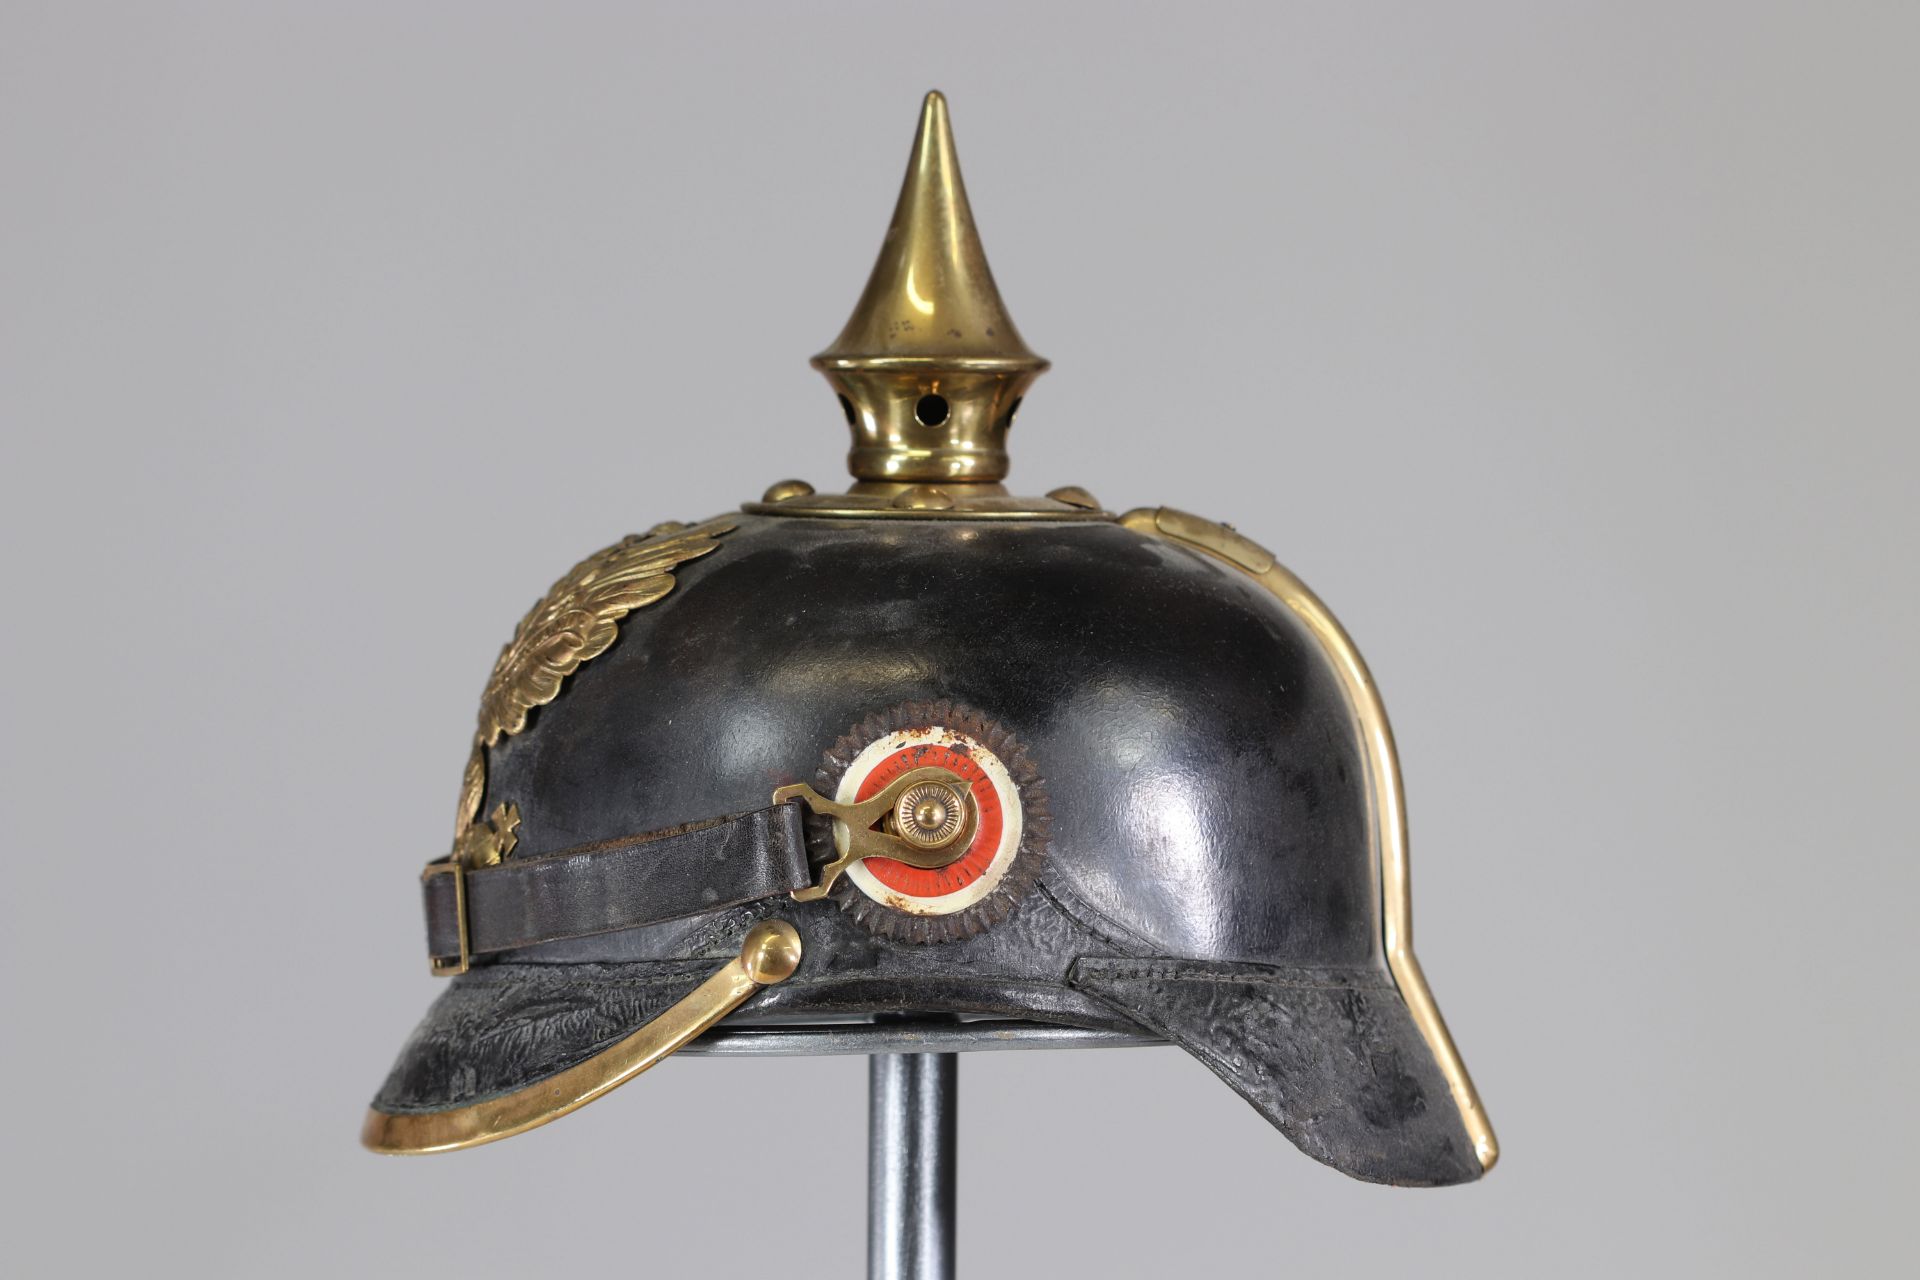 German helmet 14-18 infantry - Image 3 of 5